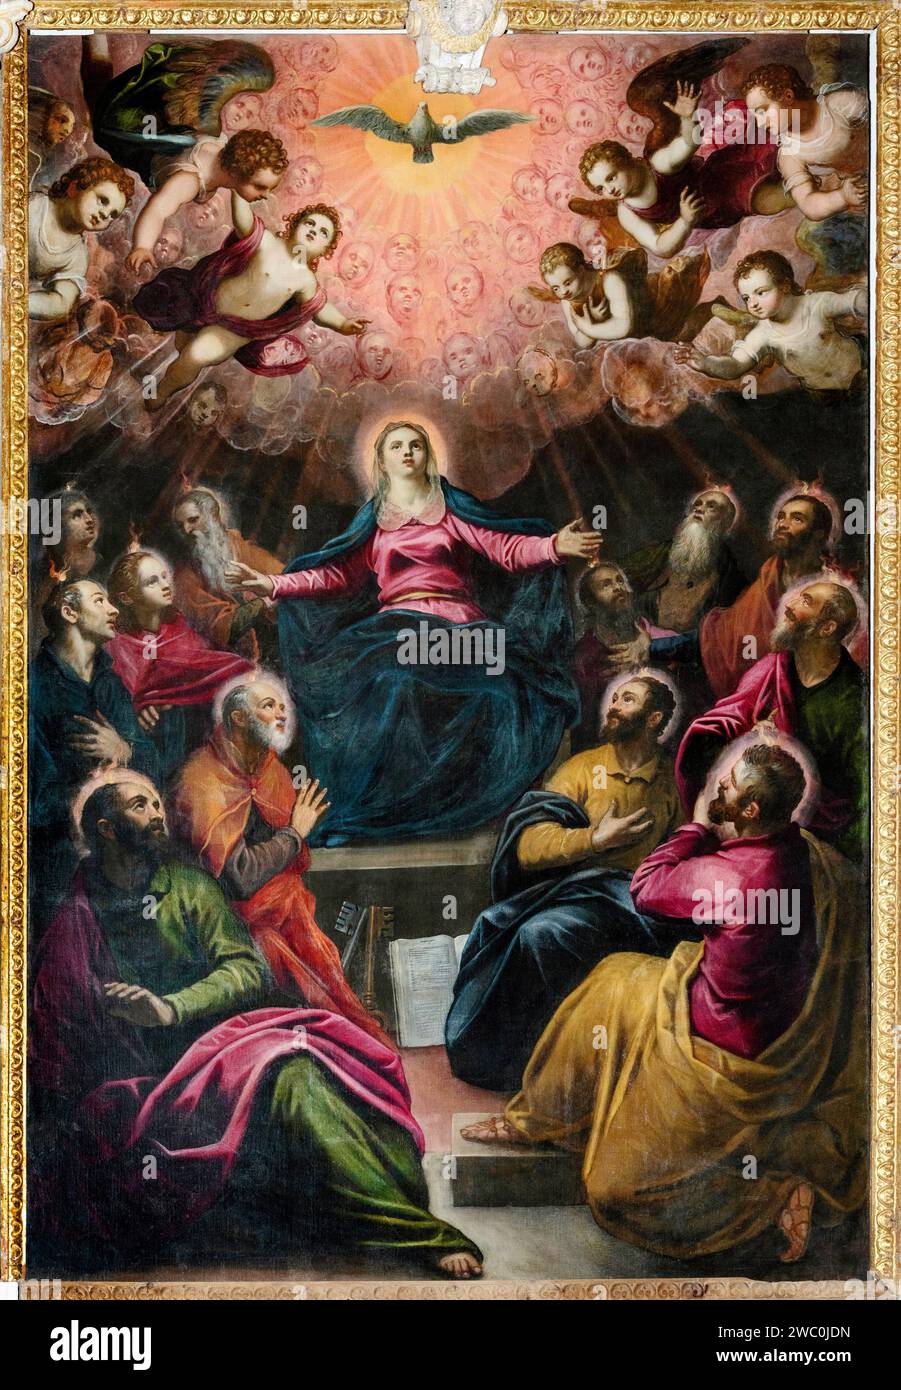 La discesa dello Spirito Santo - olio su tela - Domenico Tintoretto - XVII secolo - Verona, chiesa di S.Giorgio in Braida Stockfoto